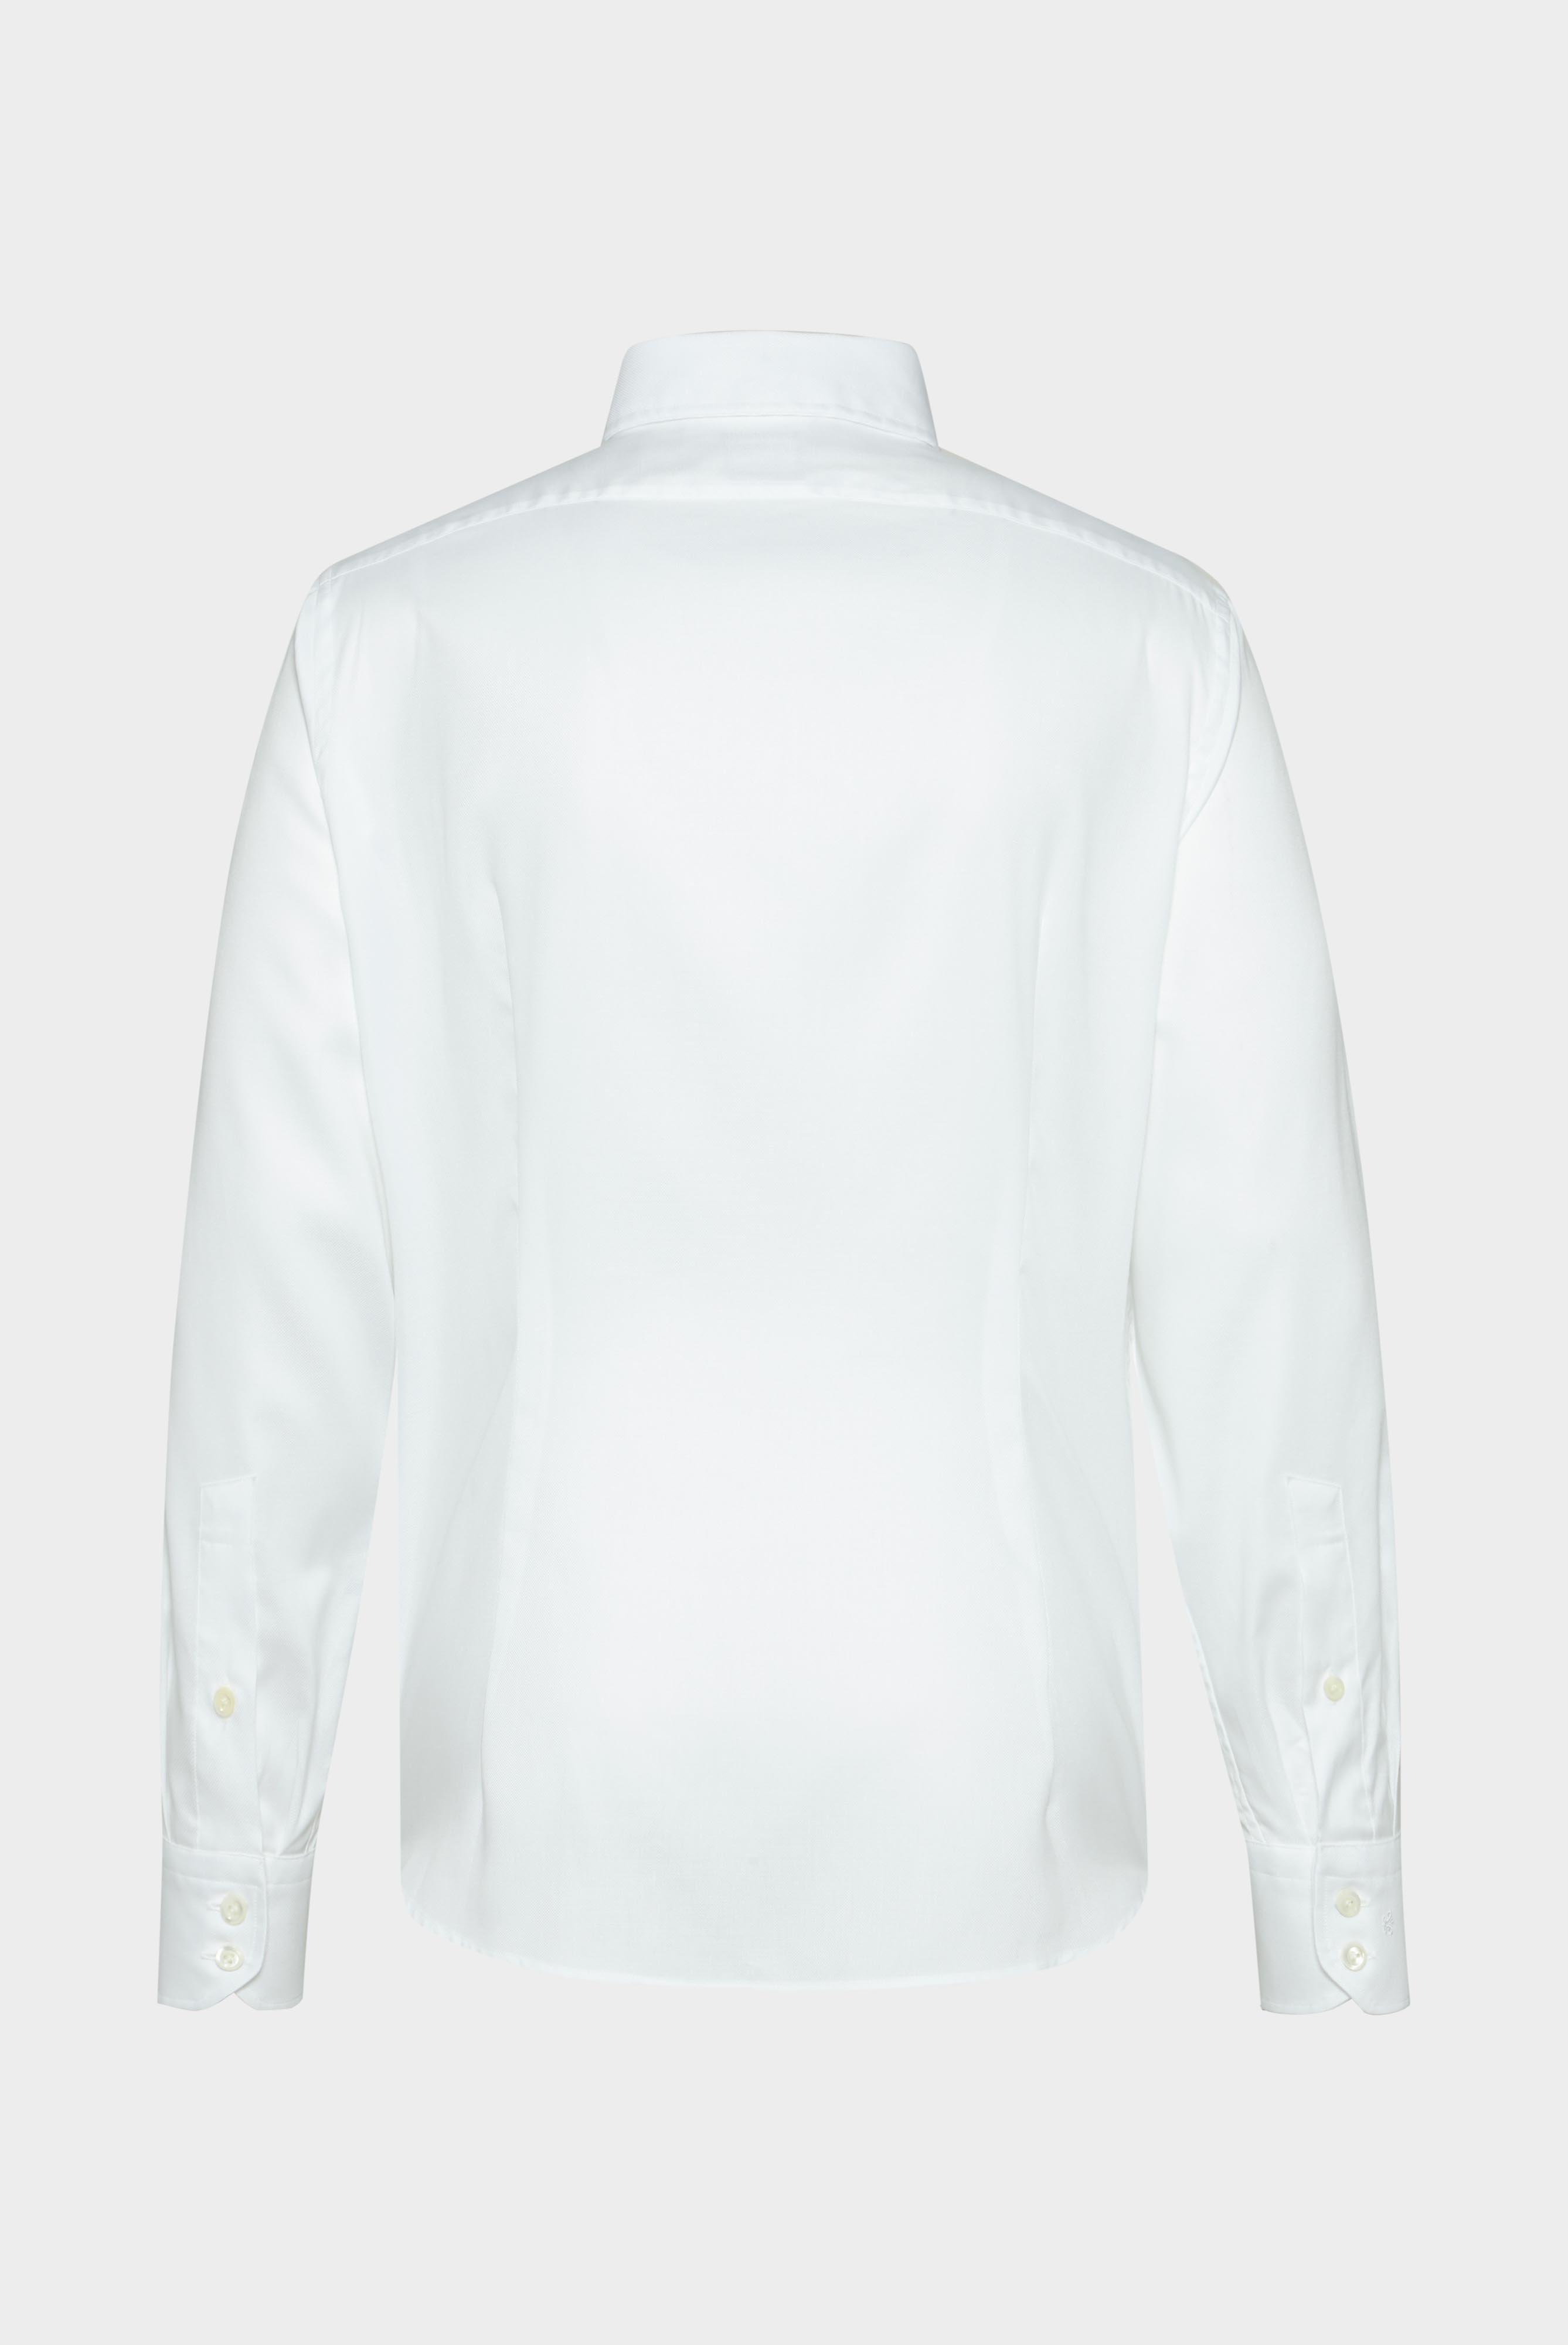 Casual Hemden+Hemd mit Strukturmuster Tailor Fit+20.2013.AV.130872.000.37